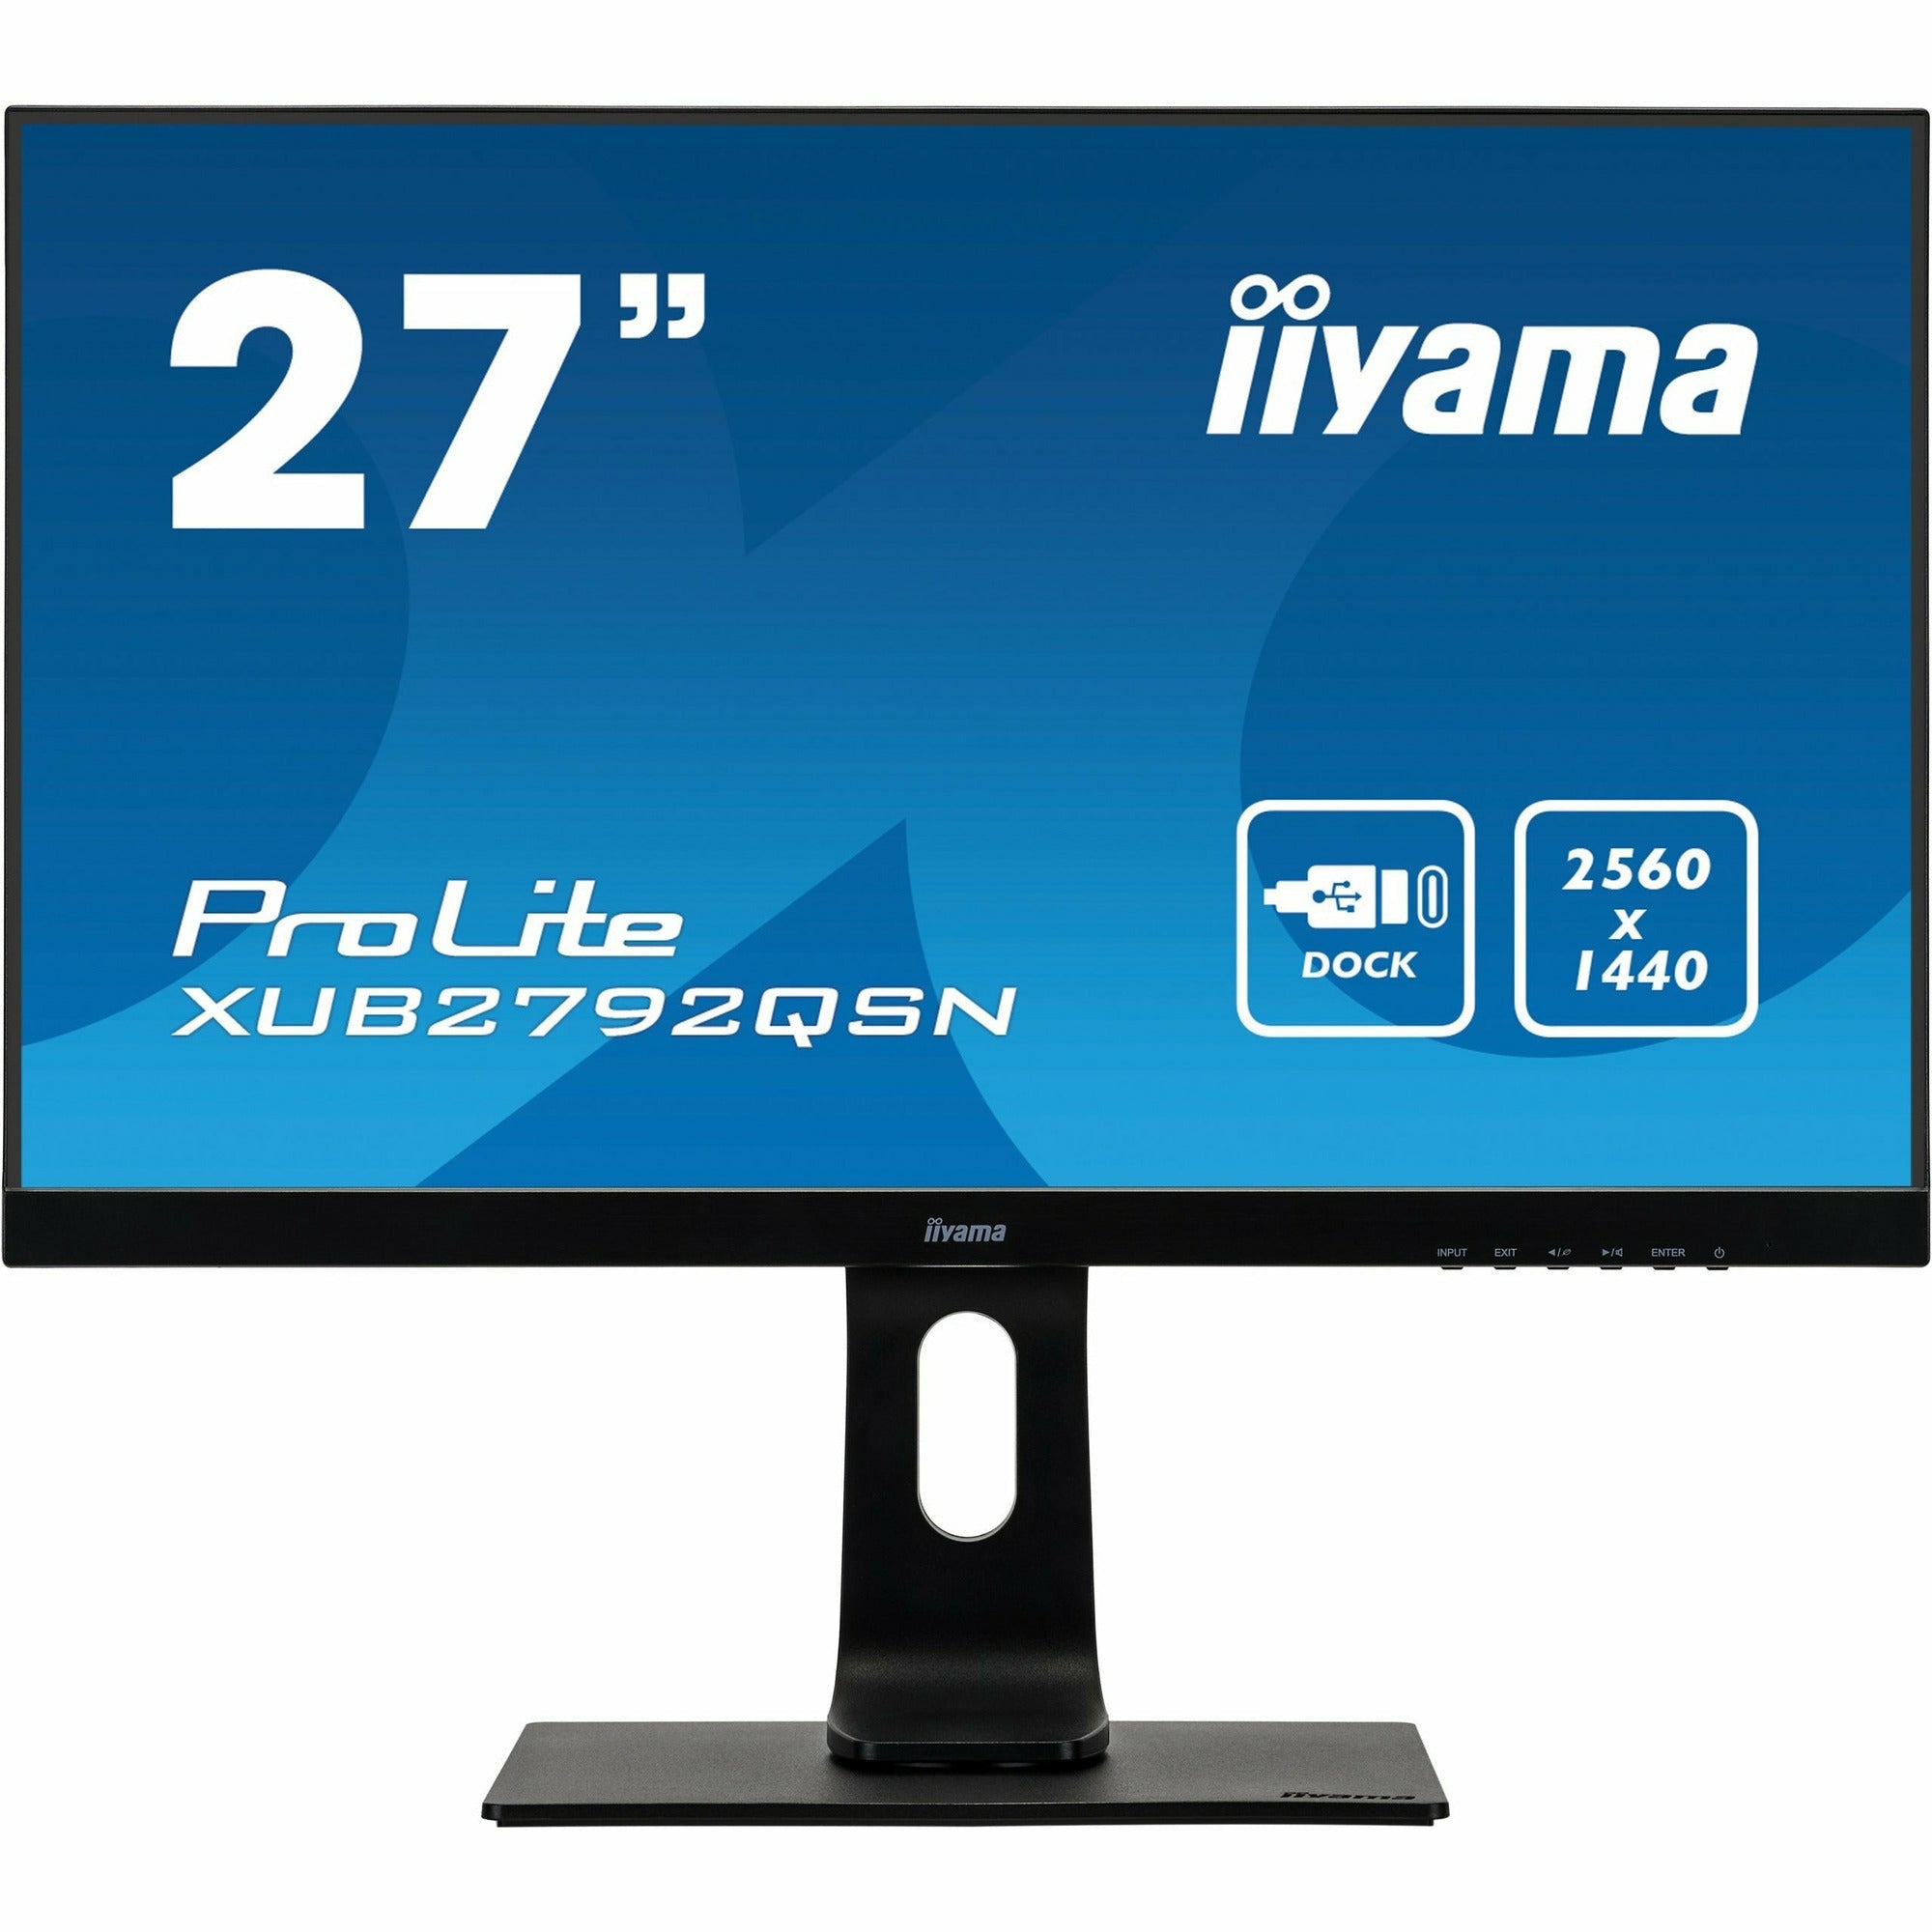 iiyama Prolite XUB2792QSN-B1 27’’ WQHD IPS Display with USB-C dock